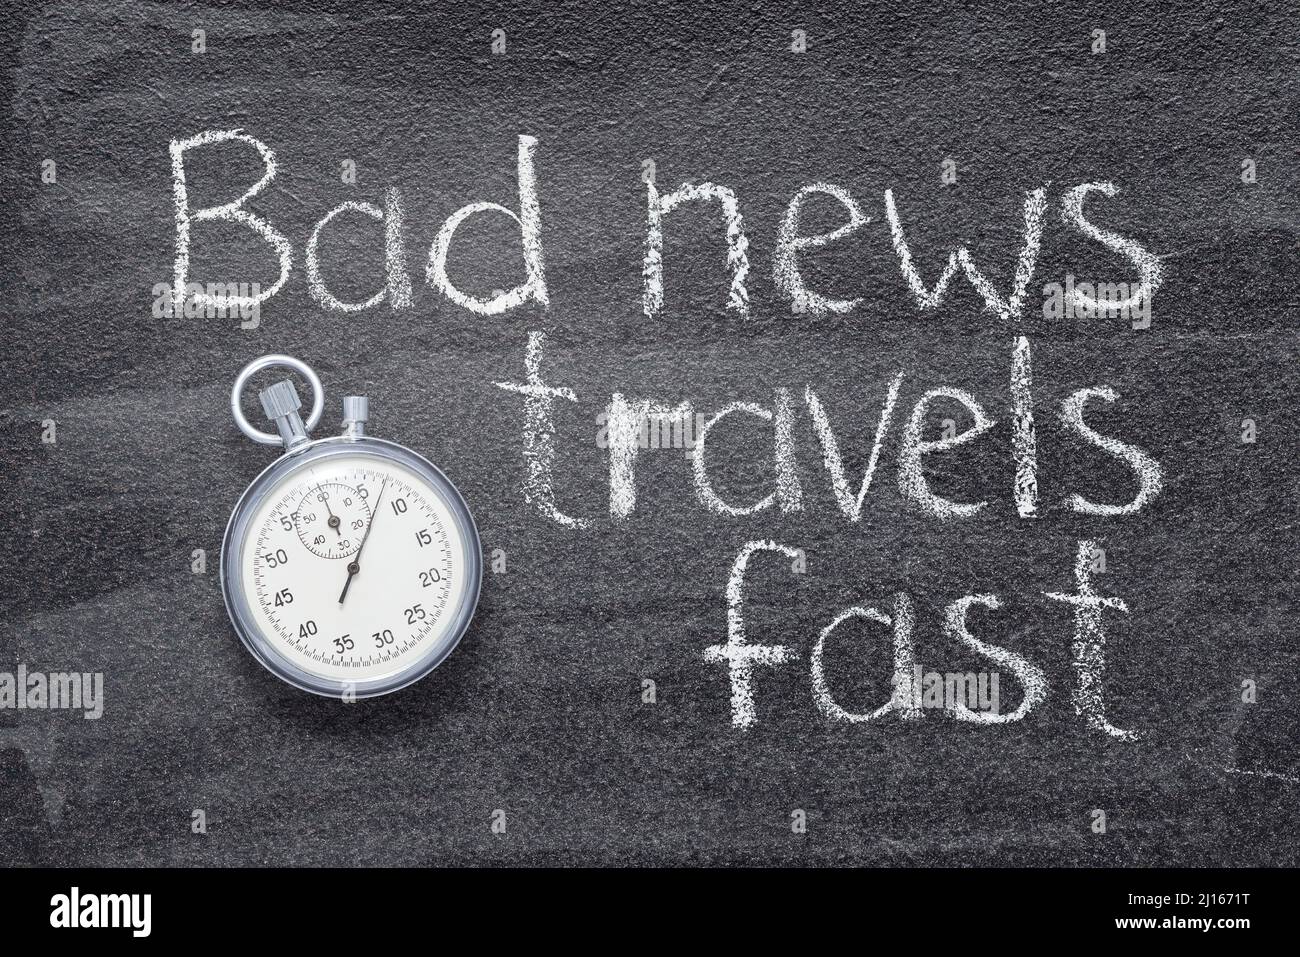 Schlechte Nachrichten reisen schnell - englisches Sprichwort auf Kreidetafel mit präziser Vintage-Stoppuhr geschrieben Stockfoto